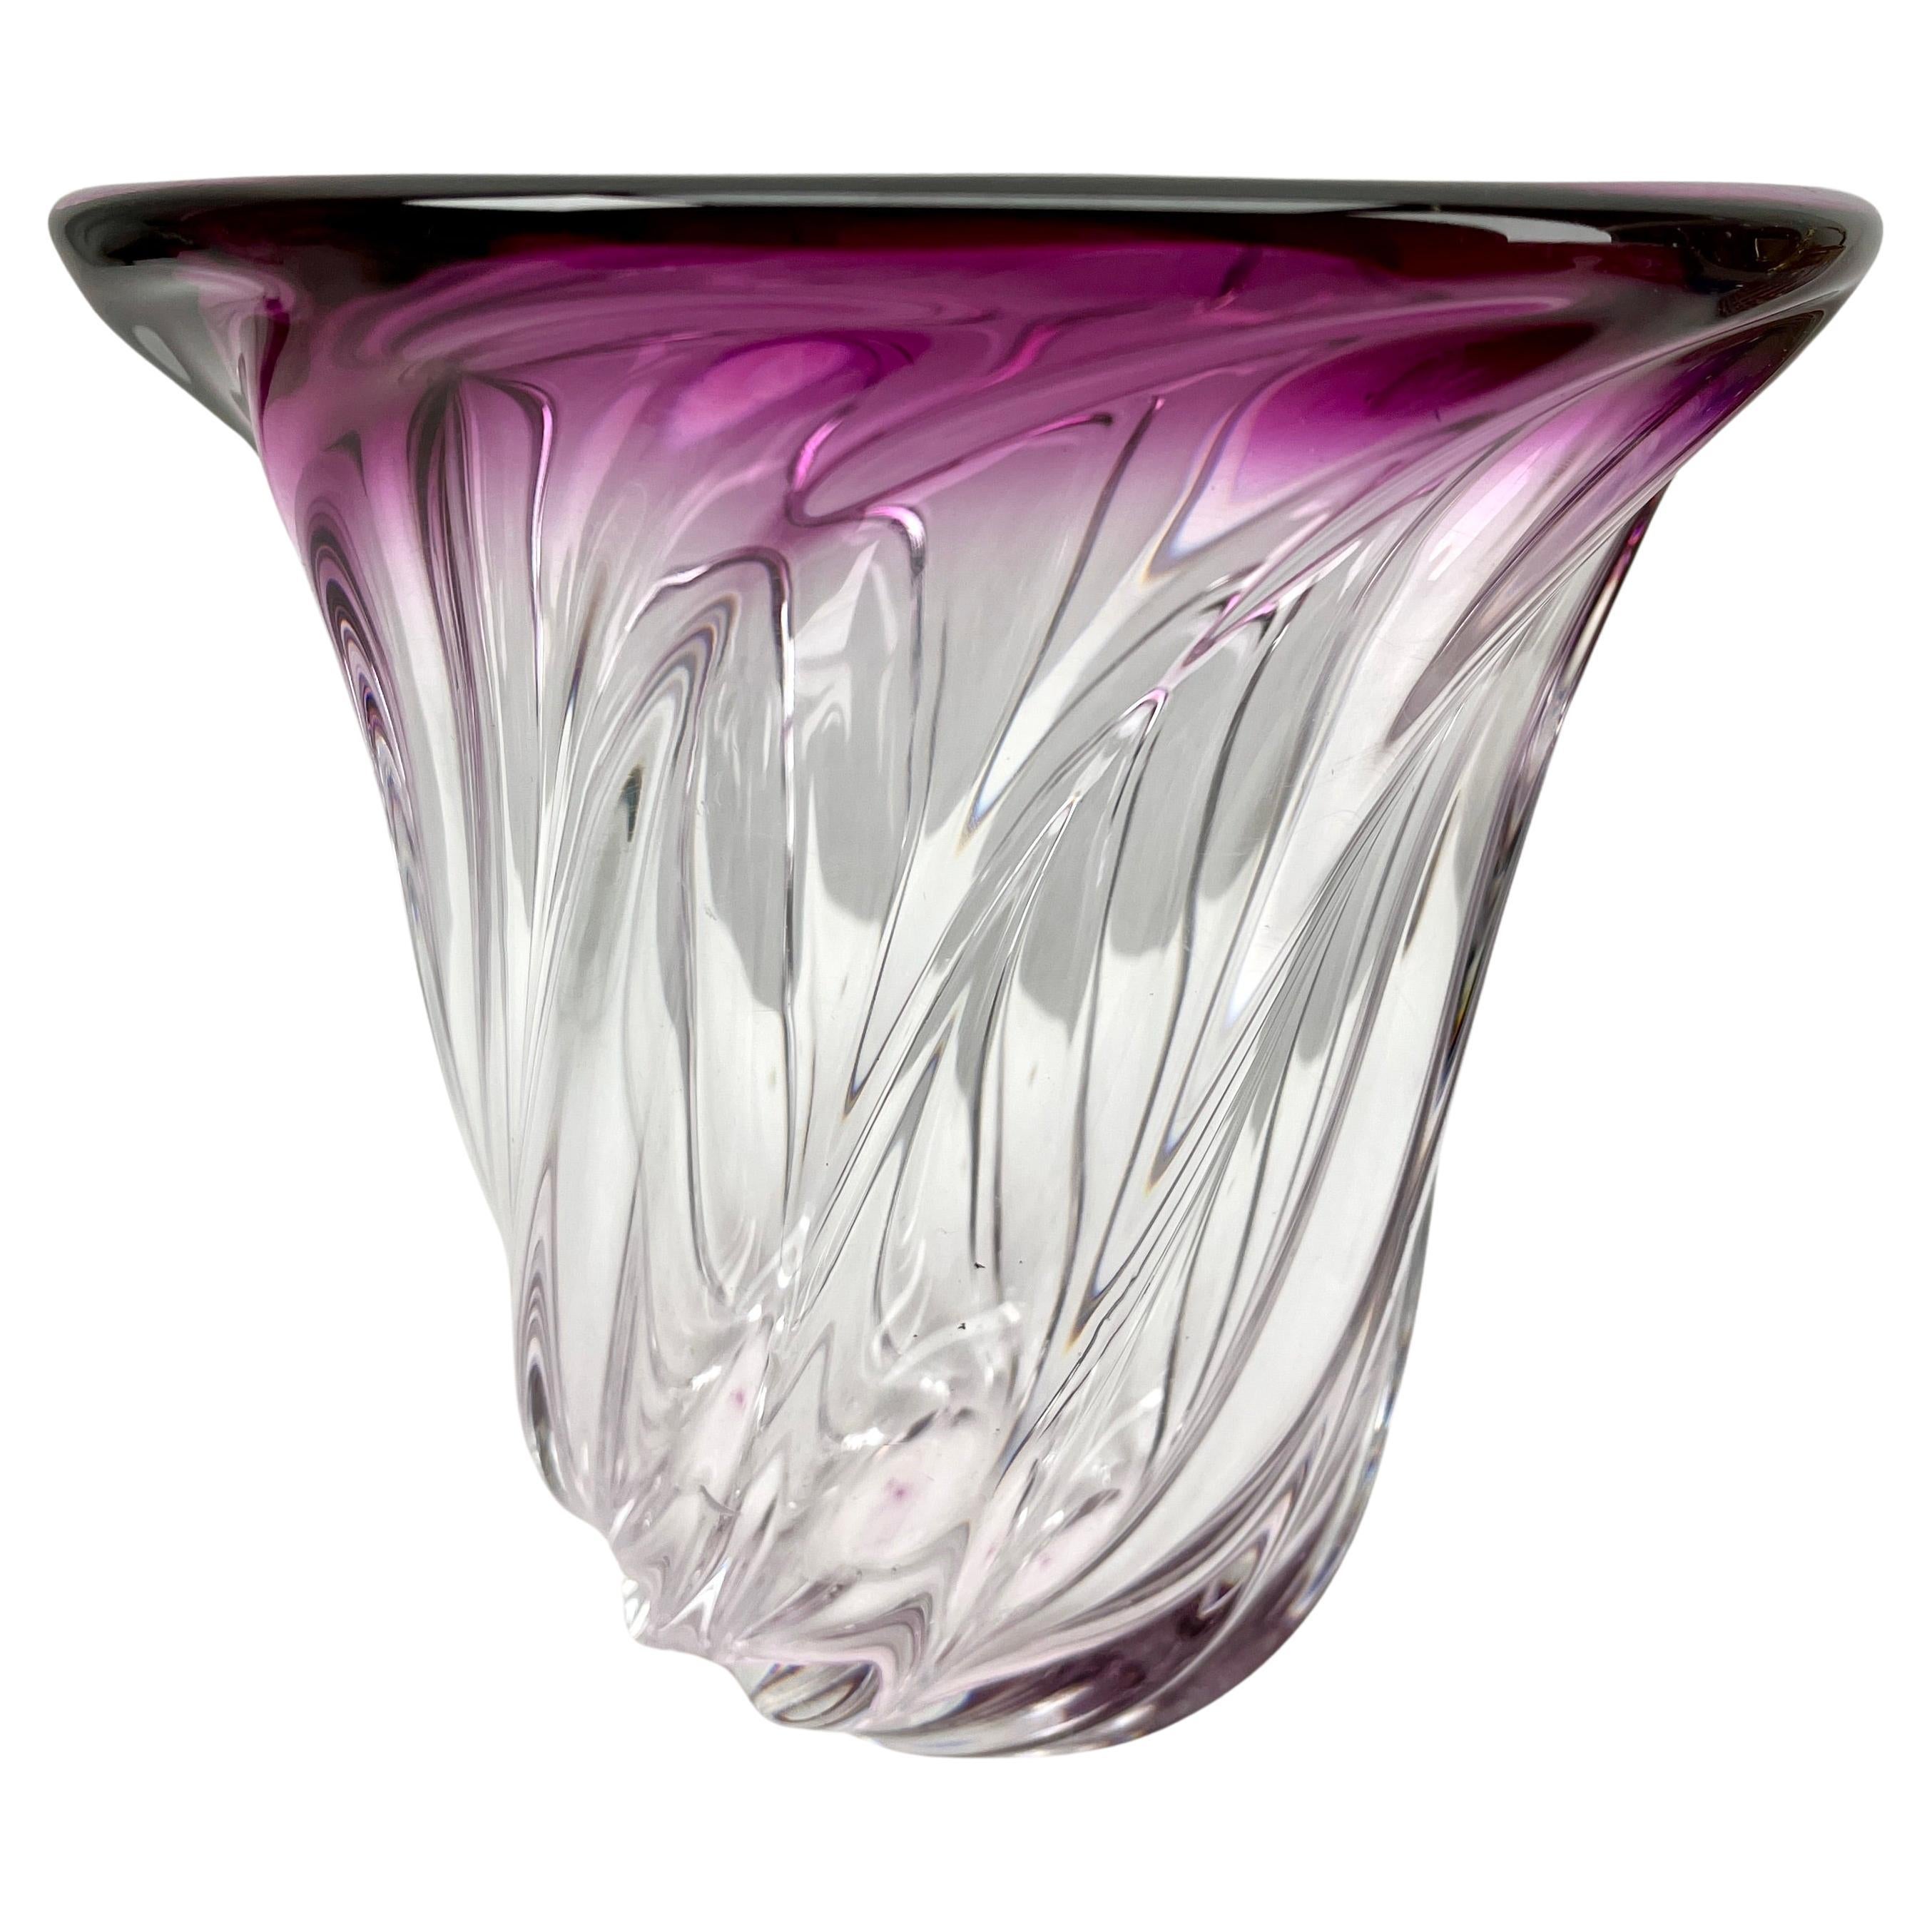 Val Saint Lambert, Vase à noyau de cristal sculpté  , Belgique.

Lourd vase en cristal Val Saint Lambert catalogué dans les années 1950.
La couleur centrale améthyste (traditionnellement préférée par VSL) a été recouverte d'une épaisse couche de